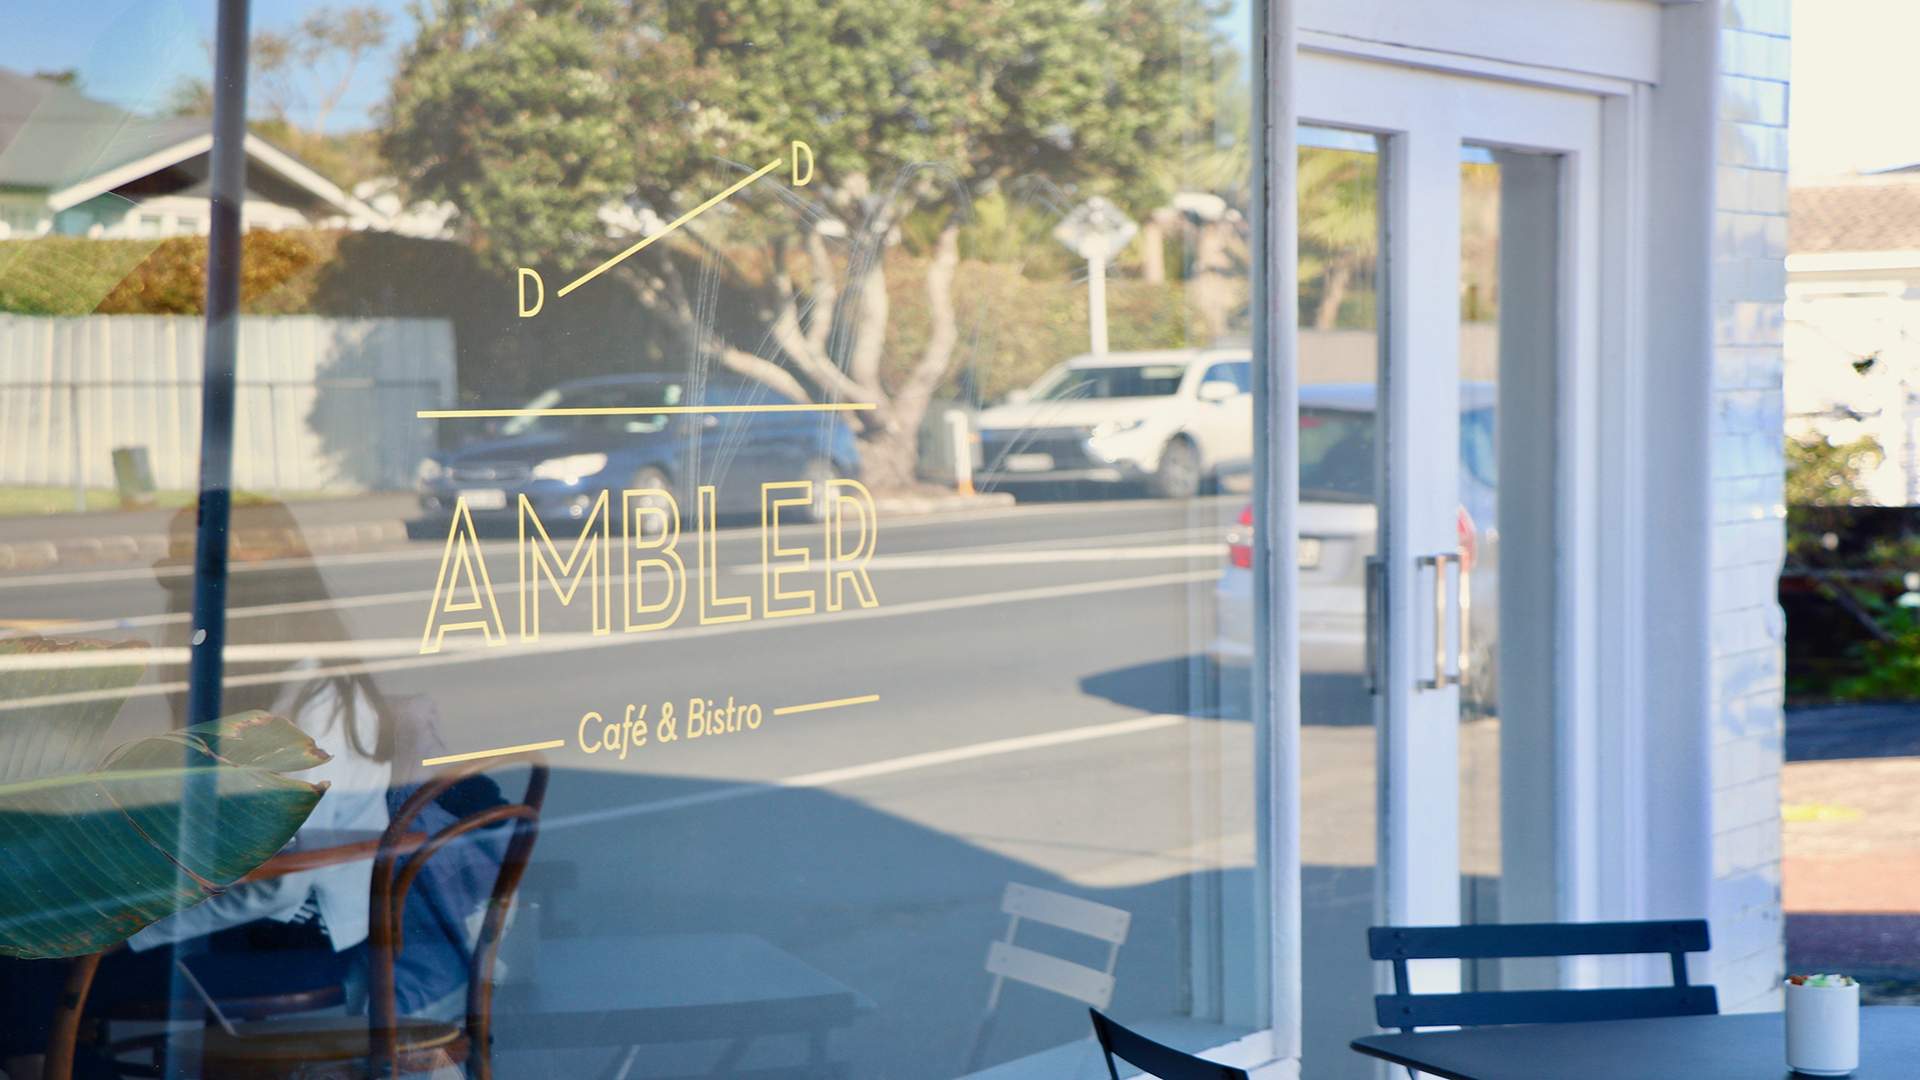 Ambler Cafe & Bistro